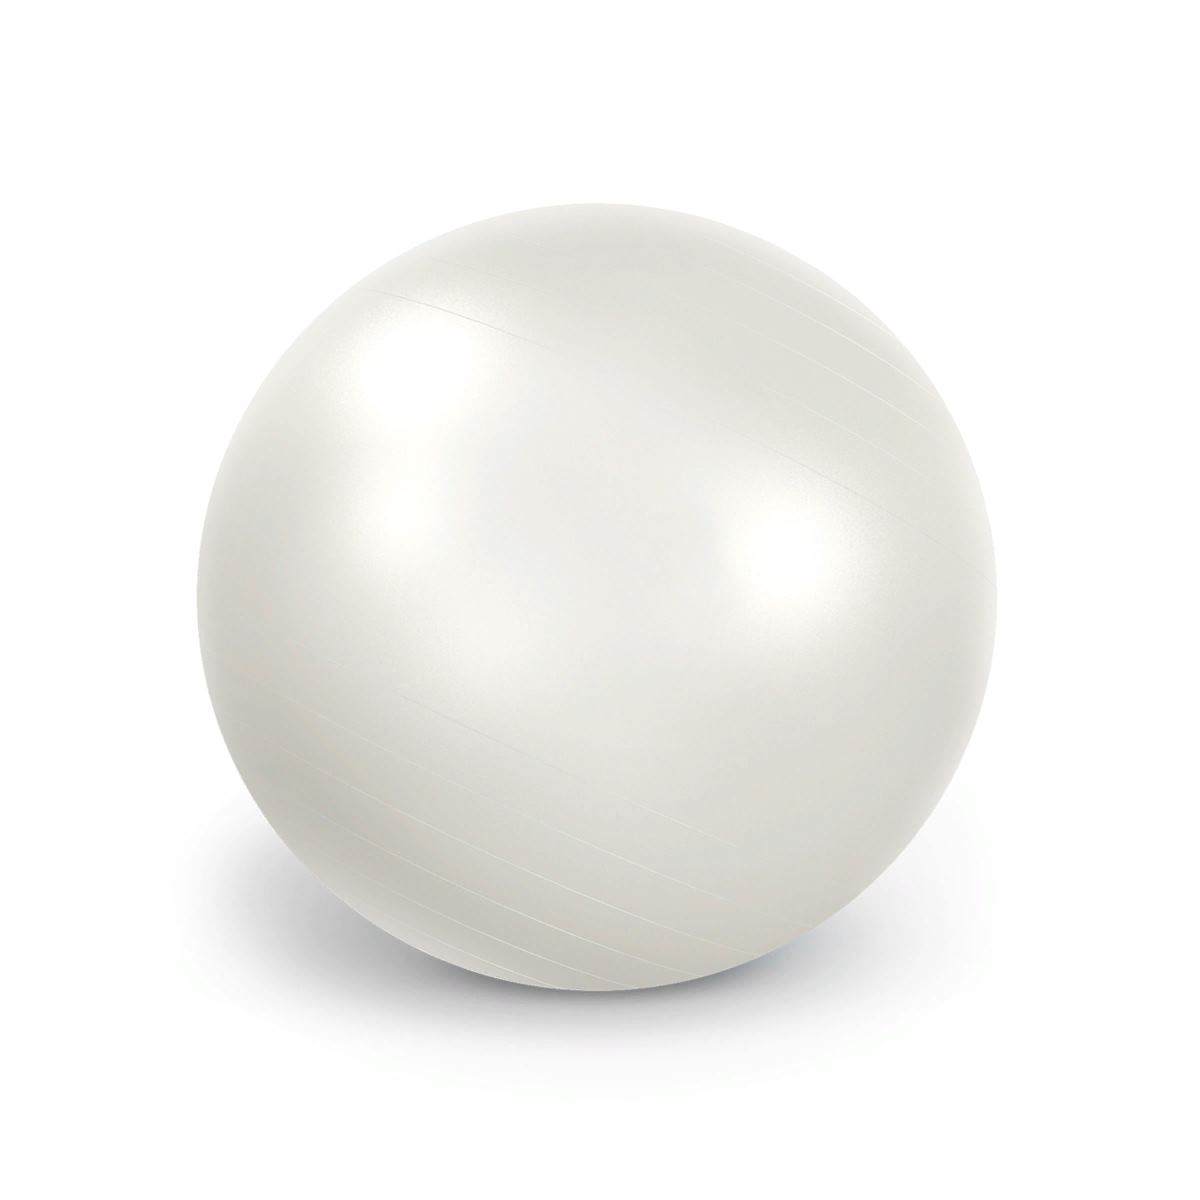 Мяч Fit Boll (Фит-бол) 75 см. перламутровый, LEDRAPLASTIC (Италия) 